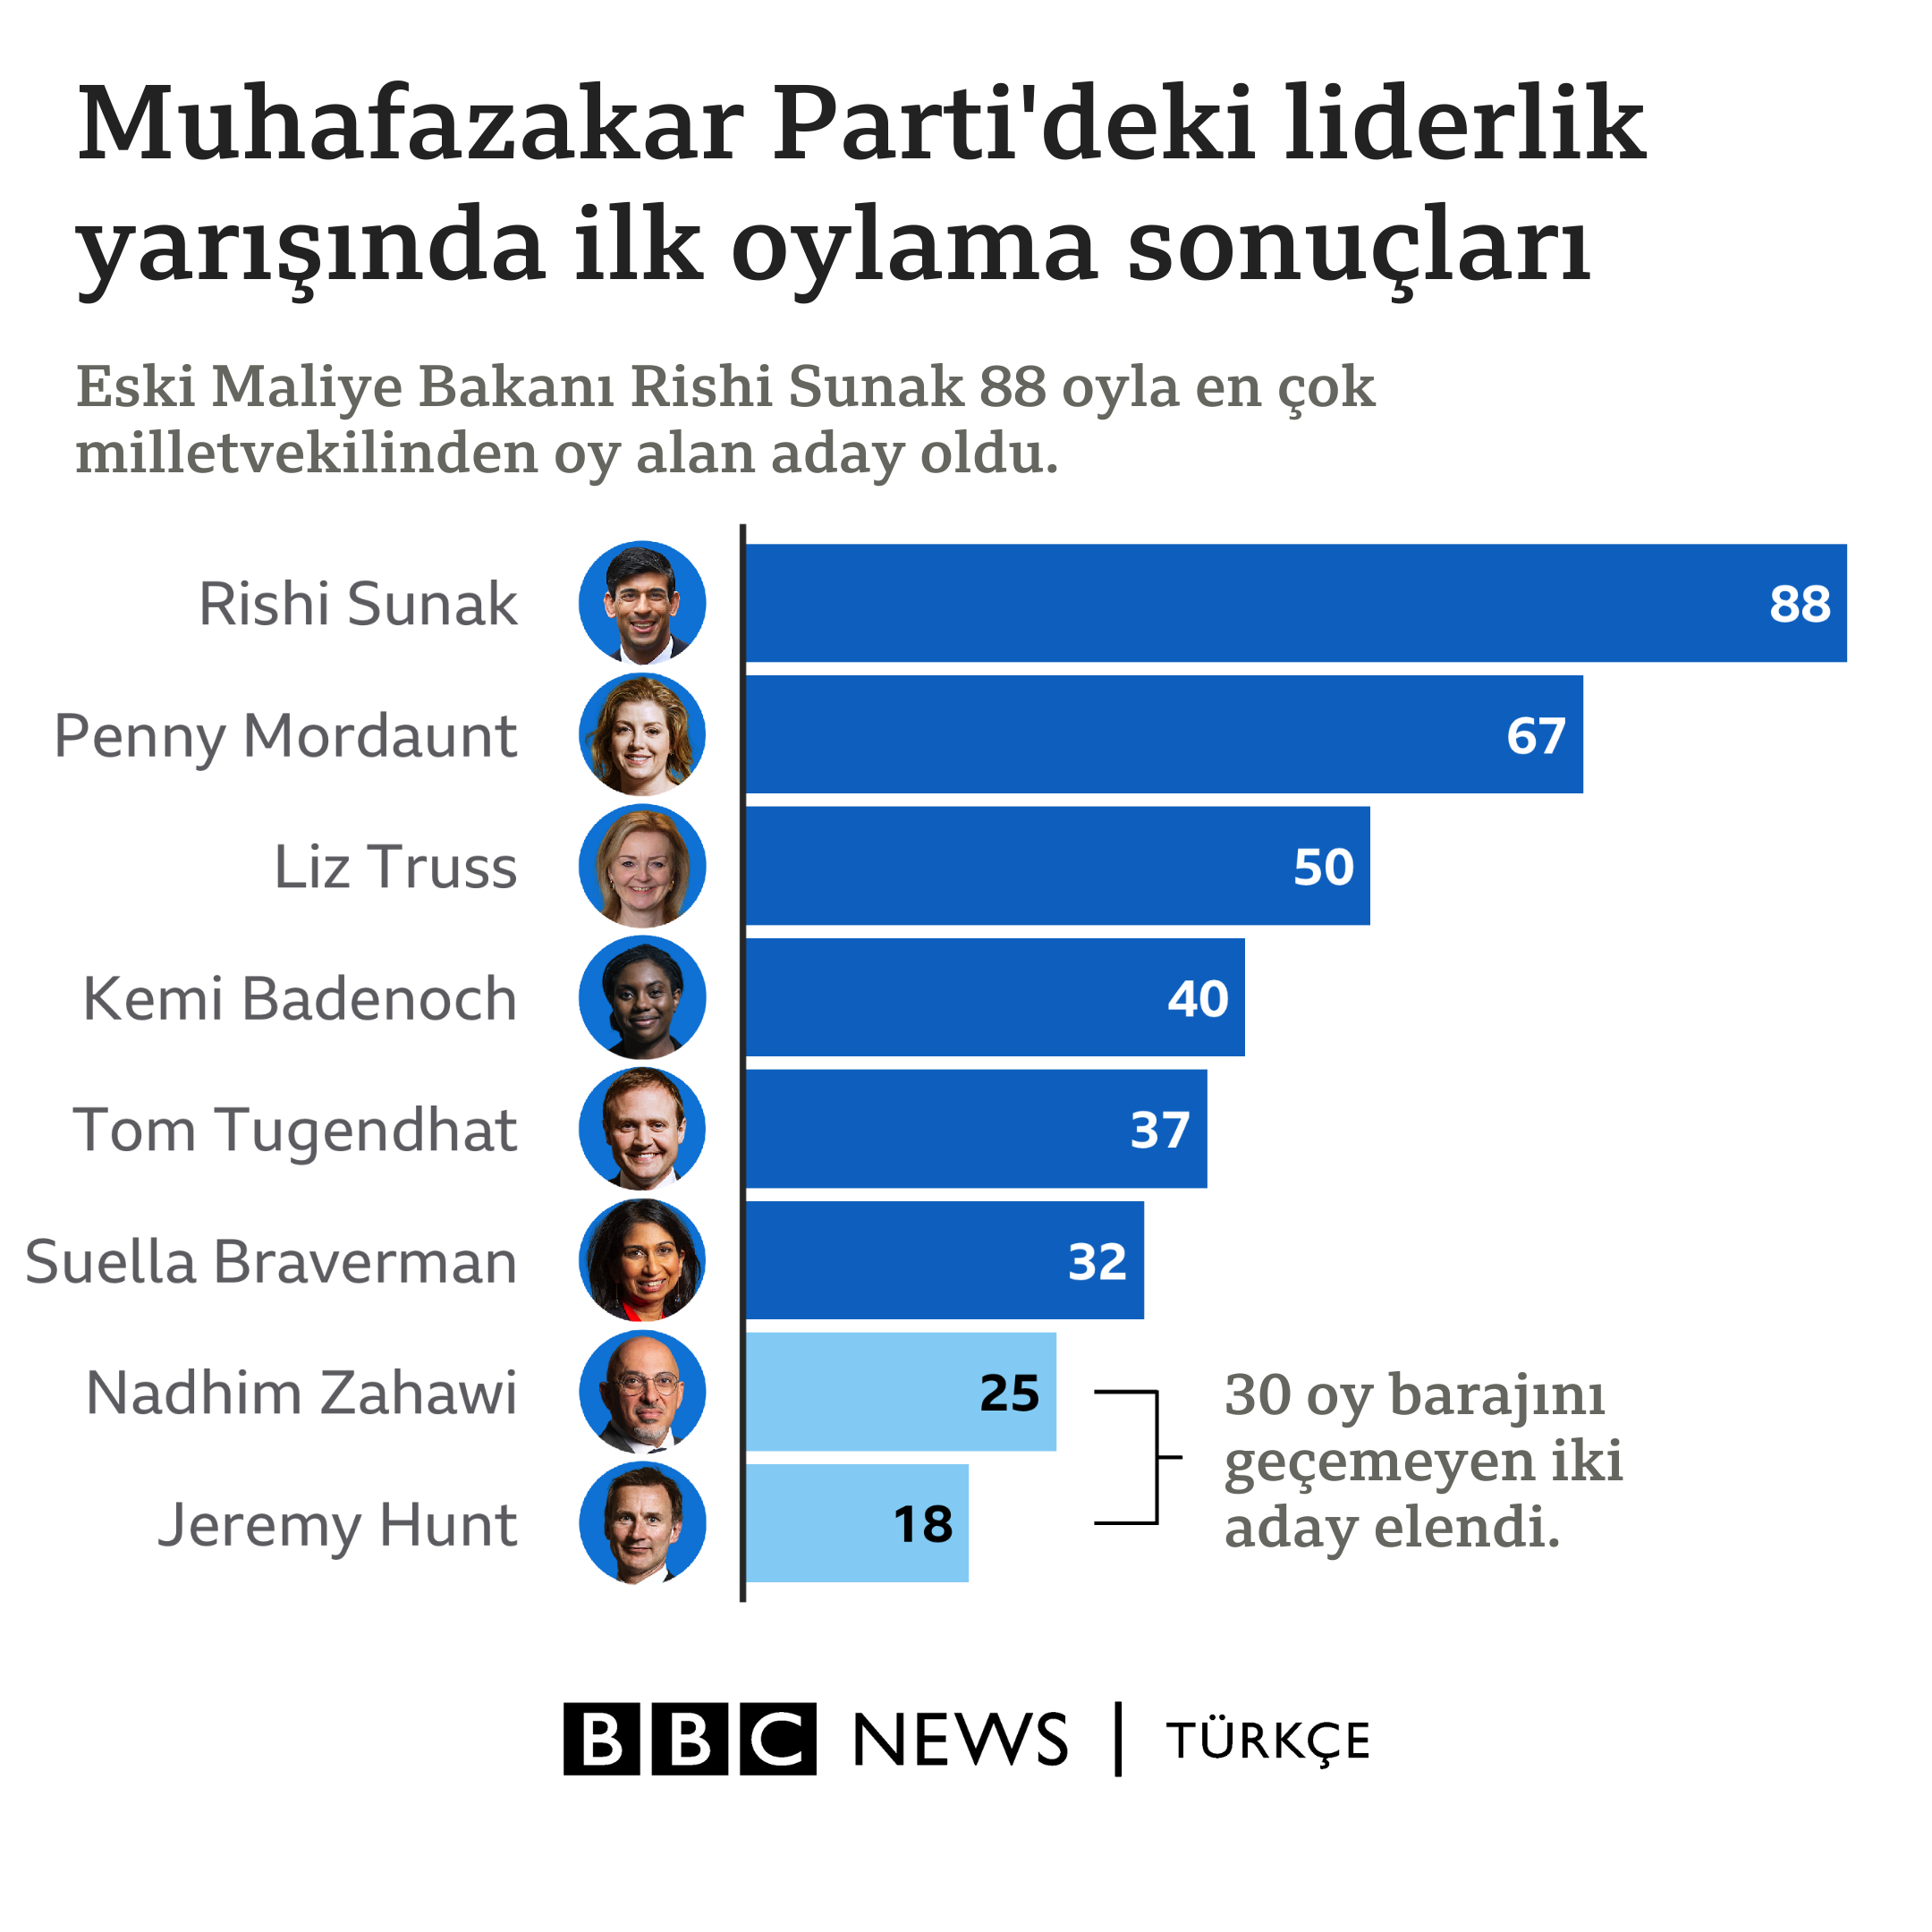 Muhafazakar Parti liderliği için ilk oylama sonuçları.